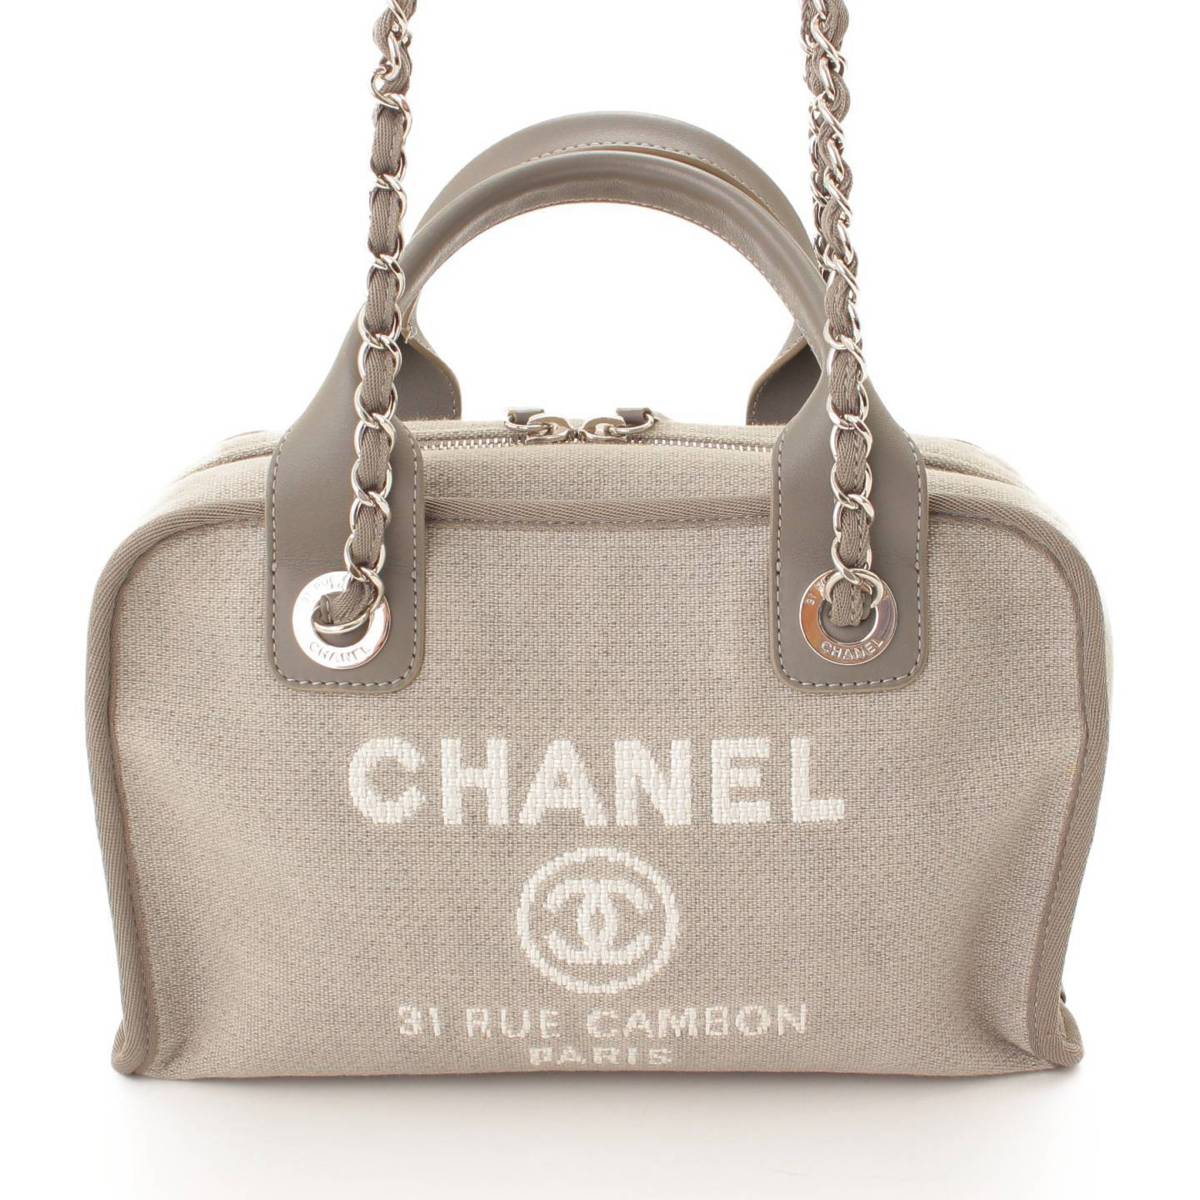 シャネル(Chanel) ドーヴィル 2wayバッグ チェーンショルダー ミニボーリングバッグ A92749 グレー